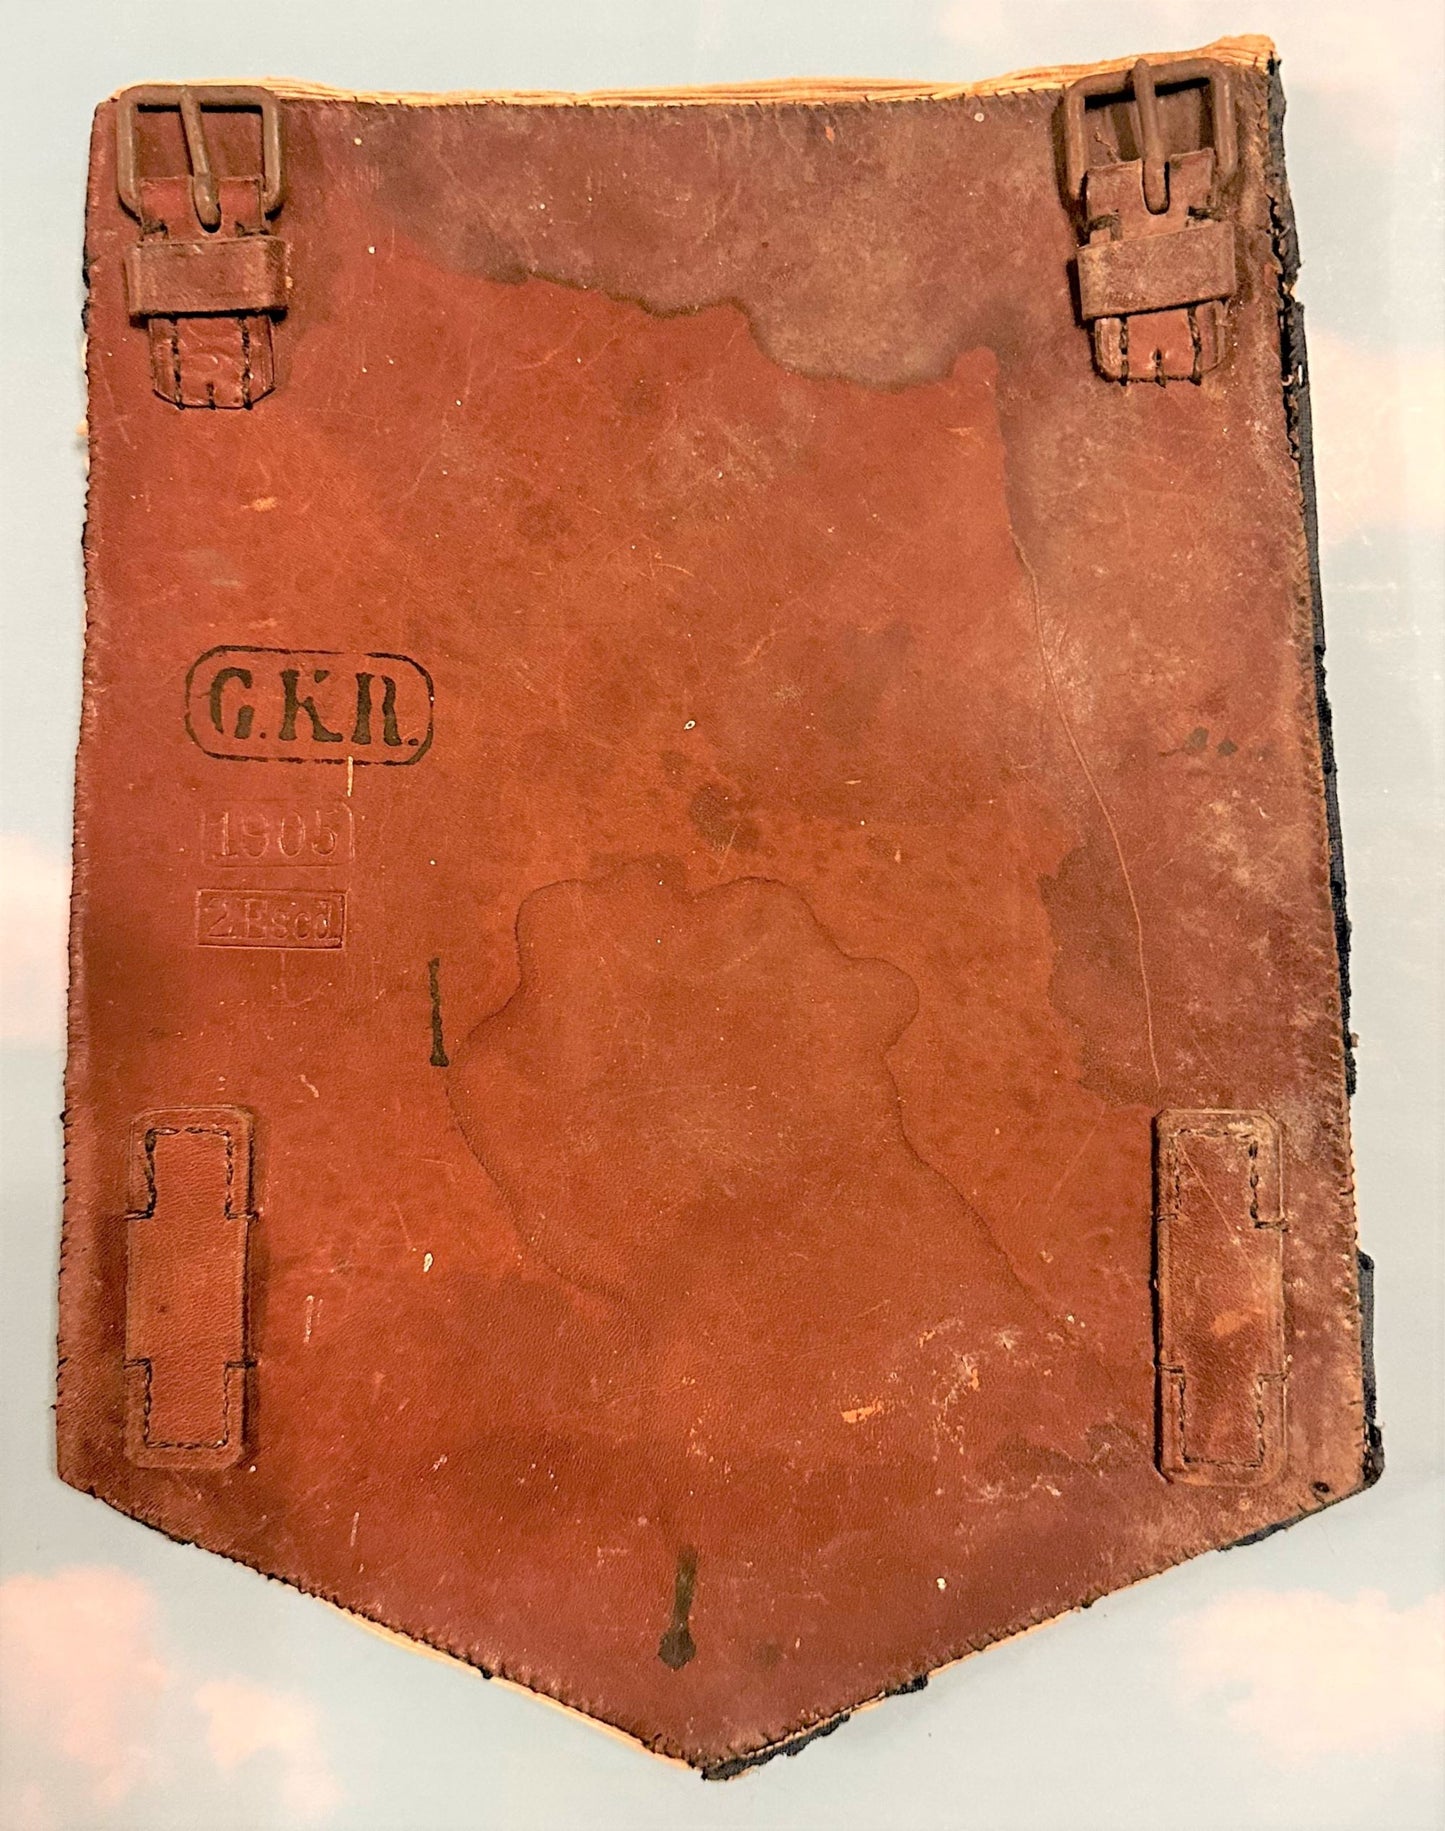 Pistol Cover for Enlisted Man - Garde-Kuraßier Regiment - Derrittmeister Militaria Group